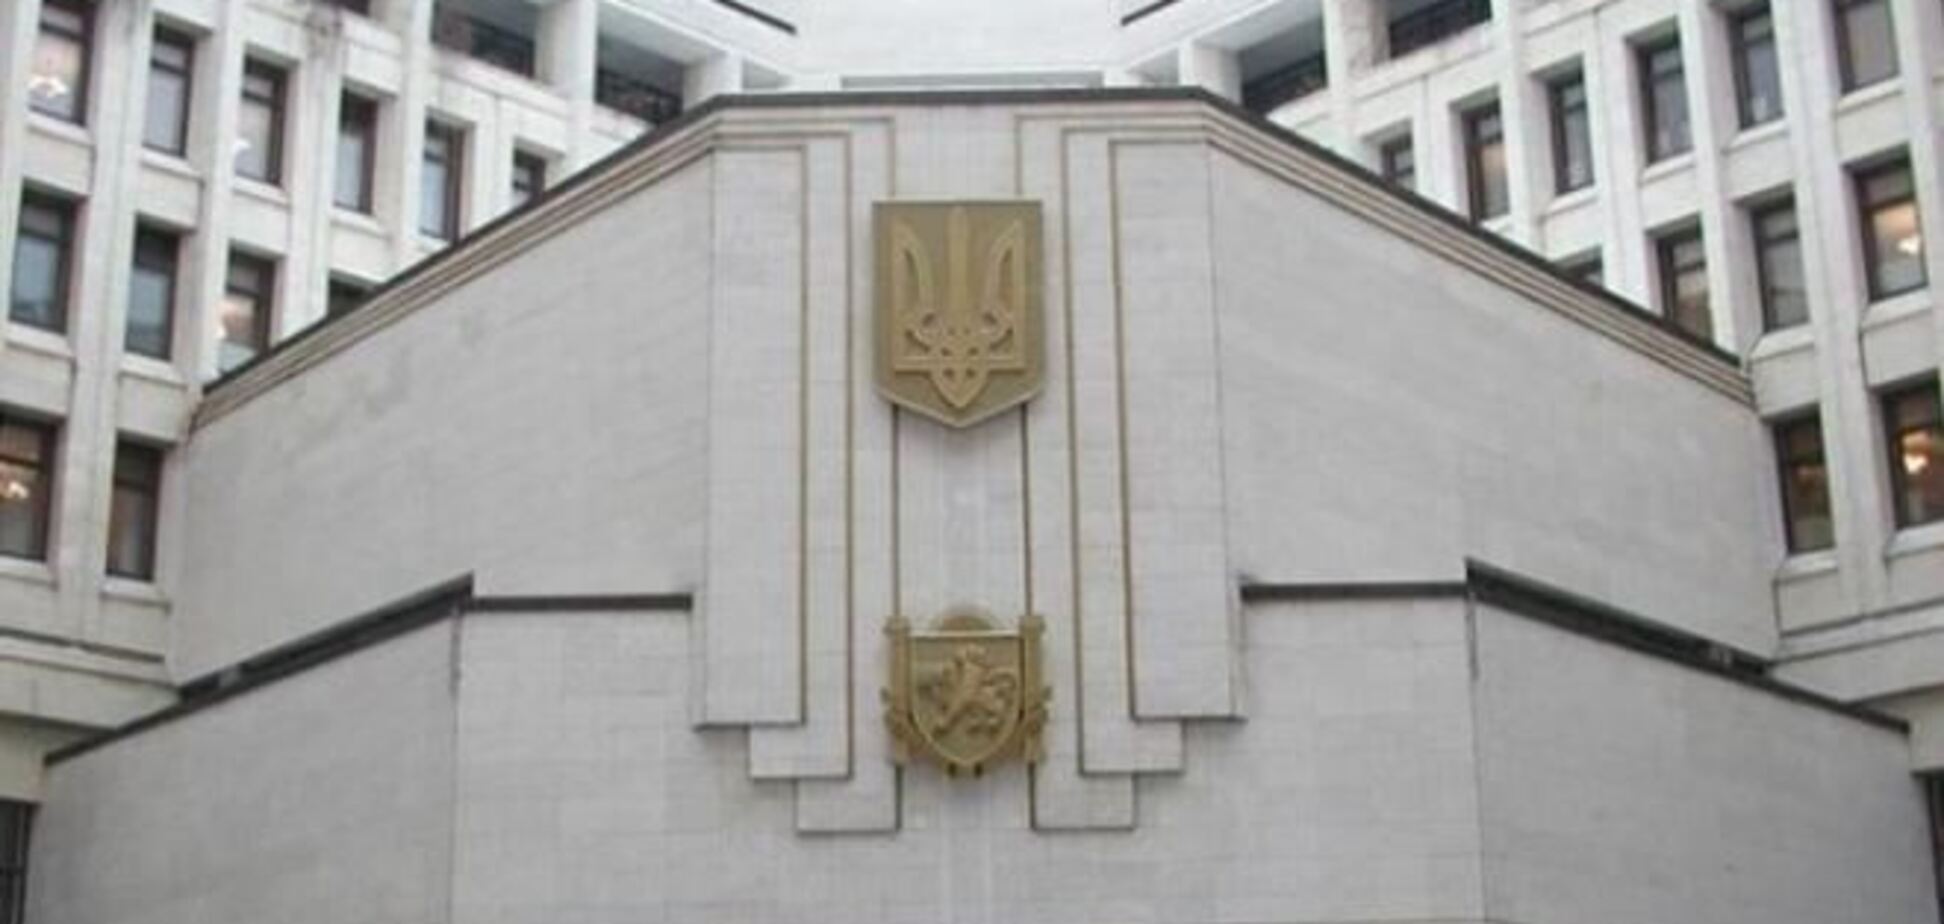 Рішення про розпуск парламенту Криму може бути скасоване - депутат